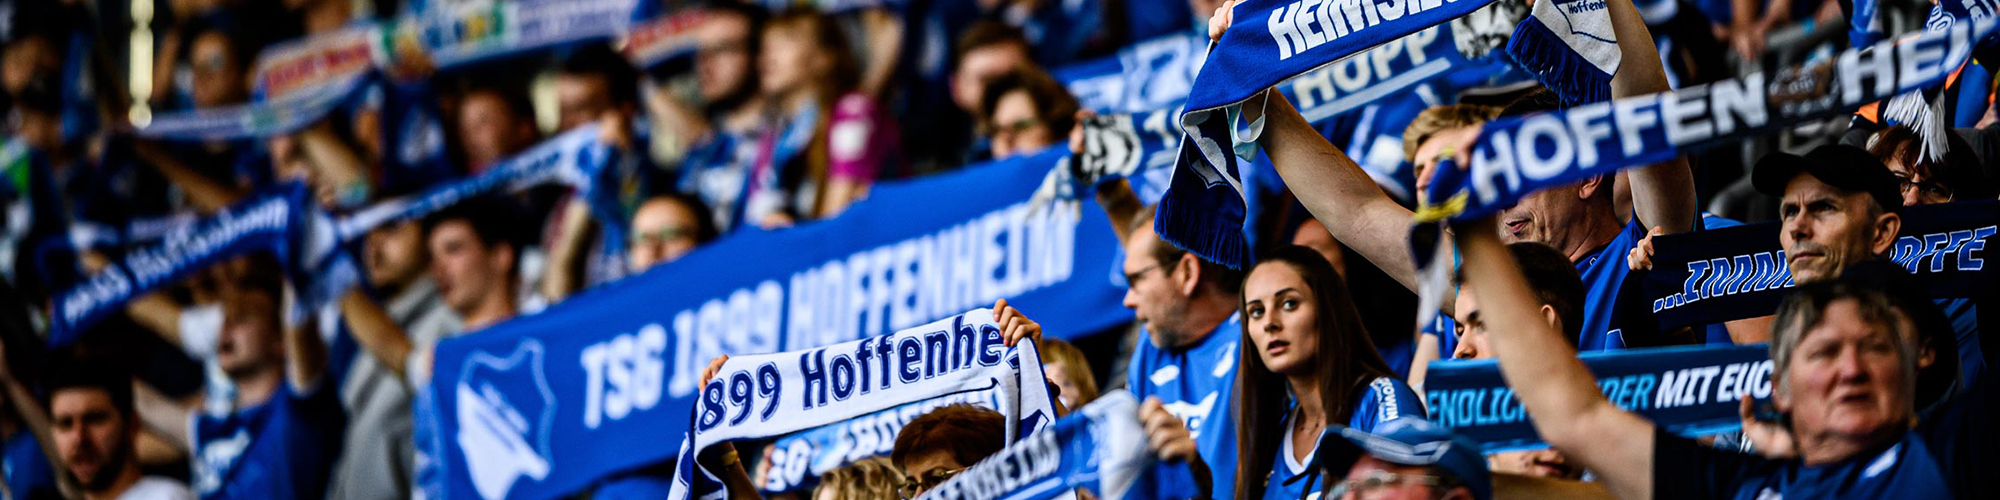 TSG Hoffenheim Tickets & Experiences